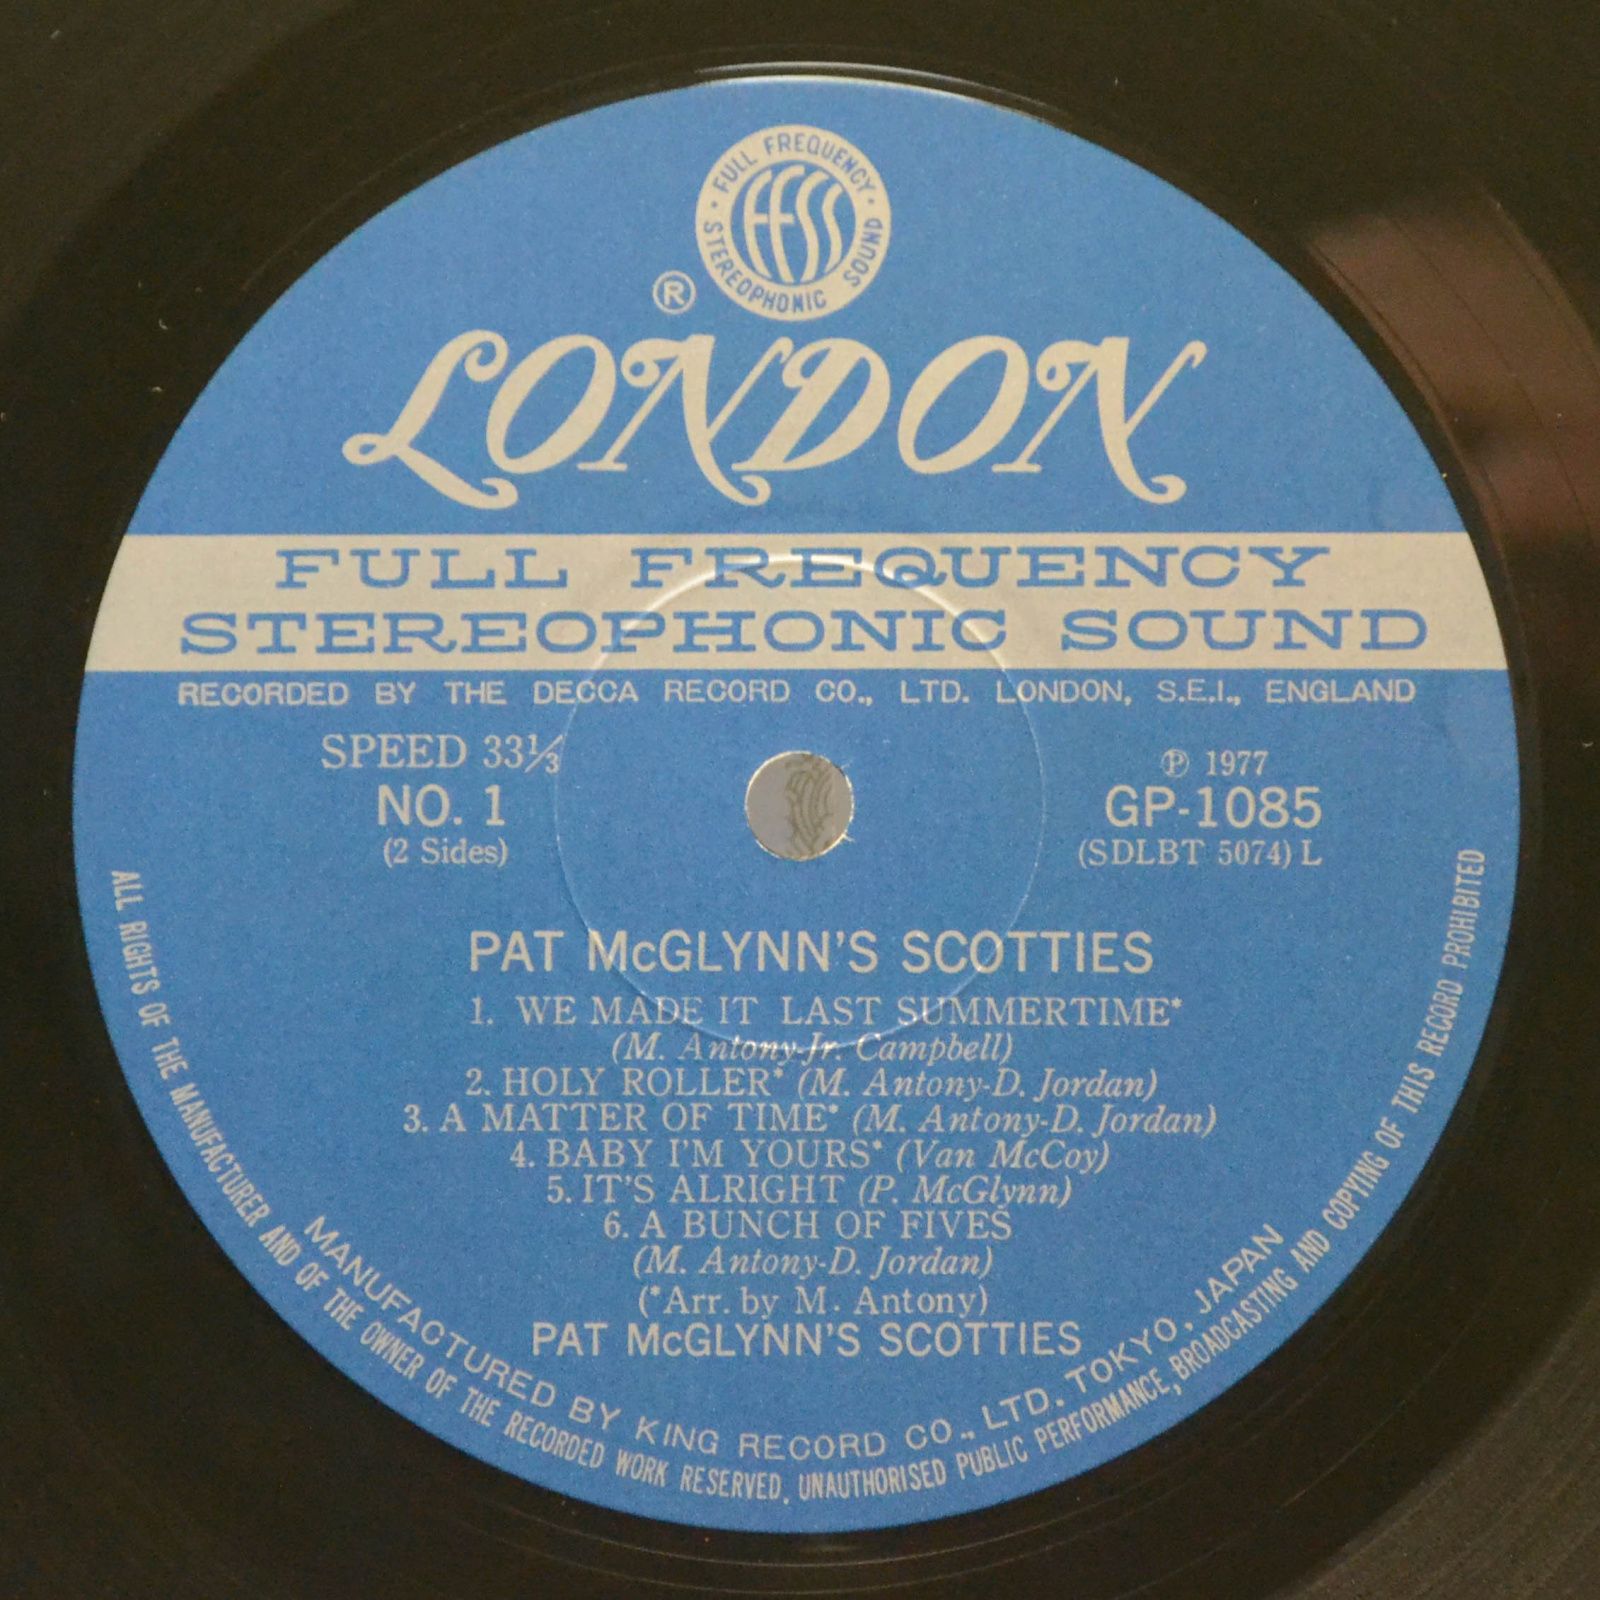 Pat McGlynn's Scotties — Pat McGlynn's Scotties, 1977